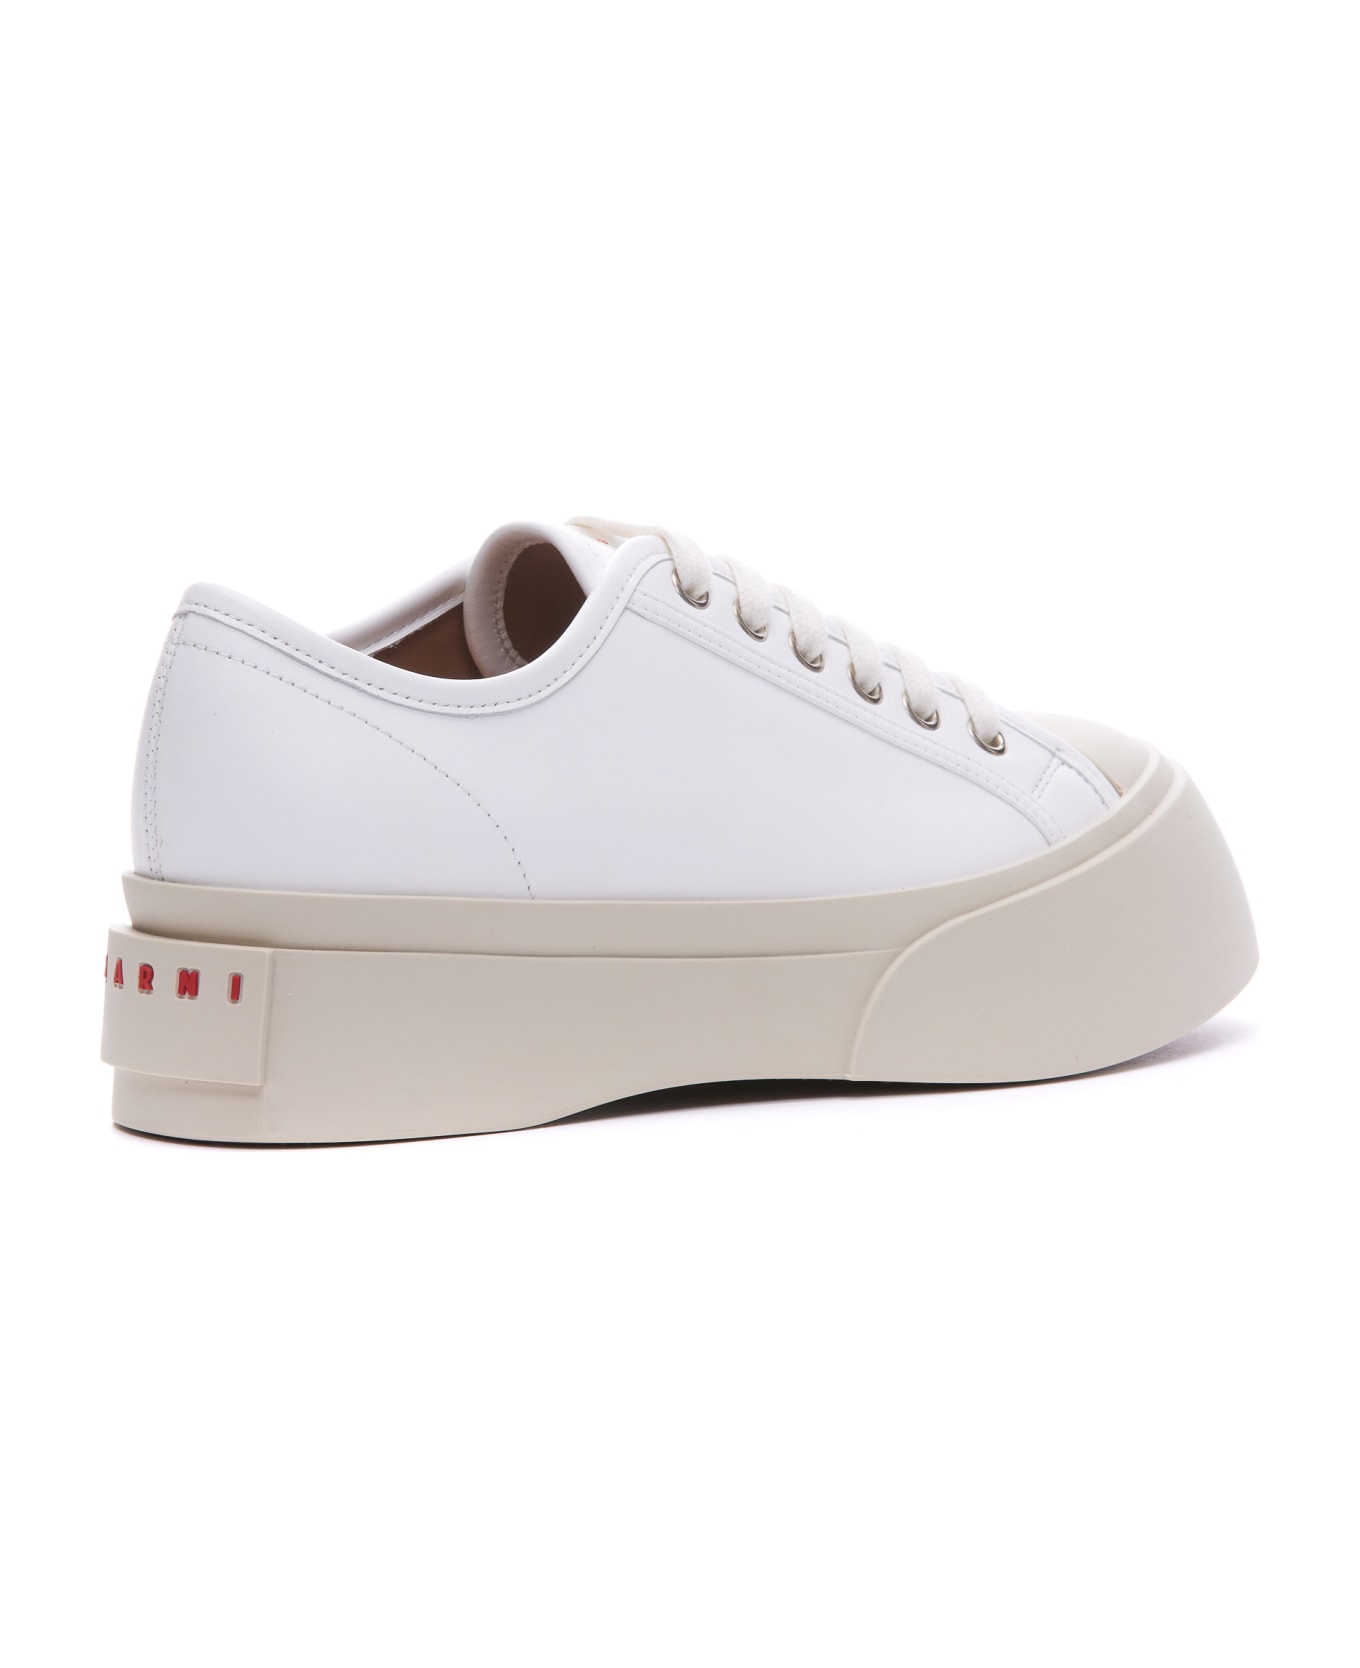 Marni Pablo Sneakers - White